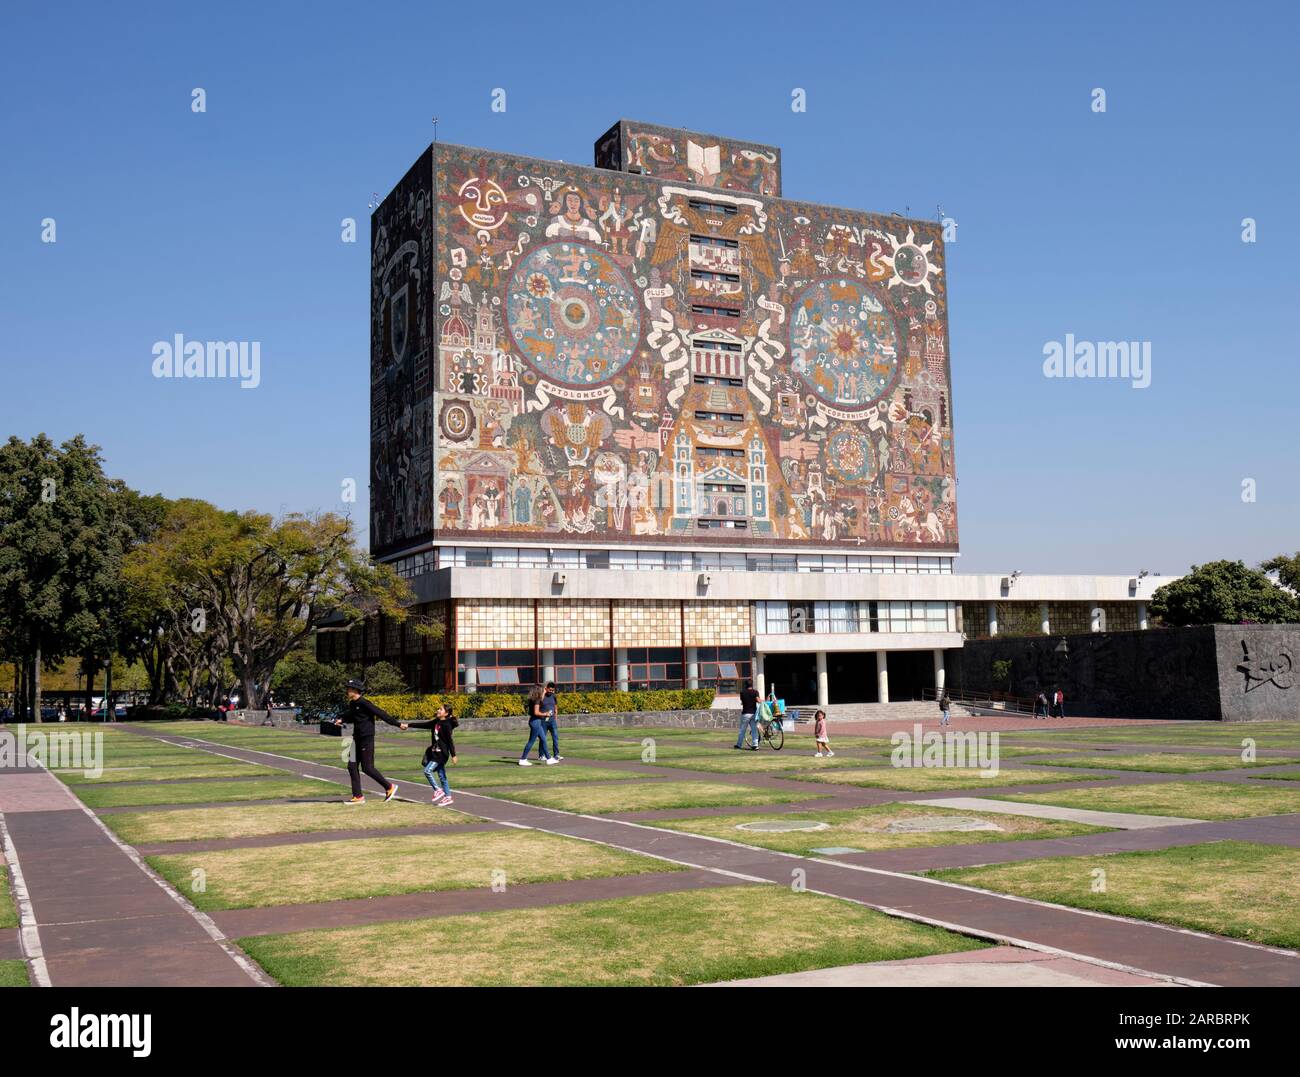 Ciudad de México Universidad campus biblioteca fachada icónica creado por el artista mexicano Juan o'Gorman con gente caminando Foto de stock